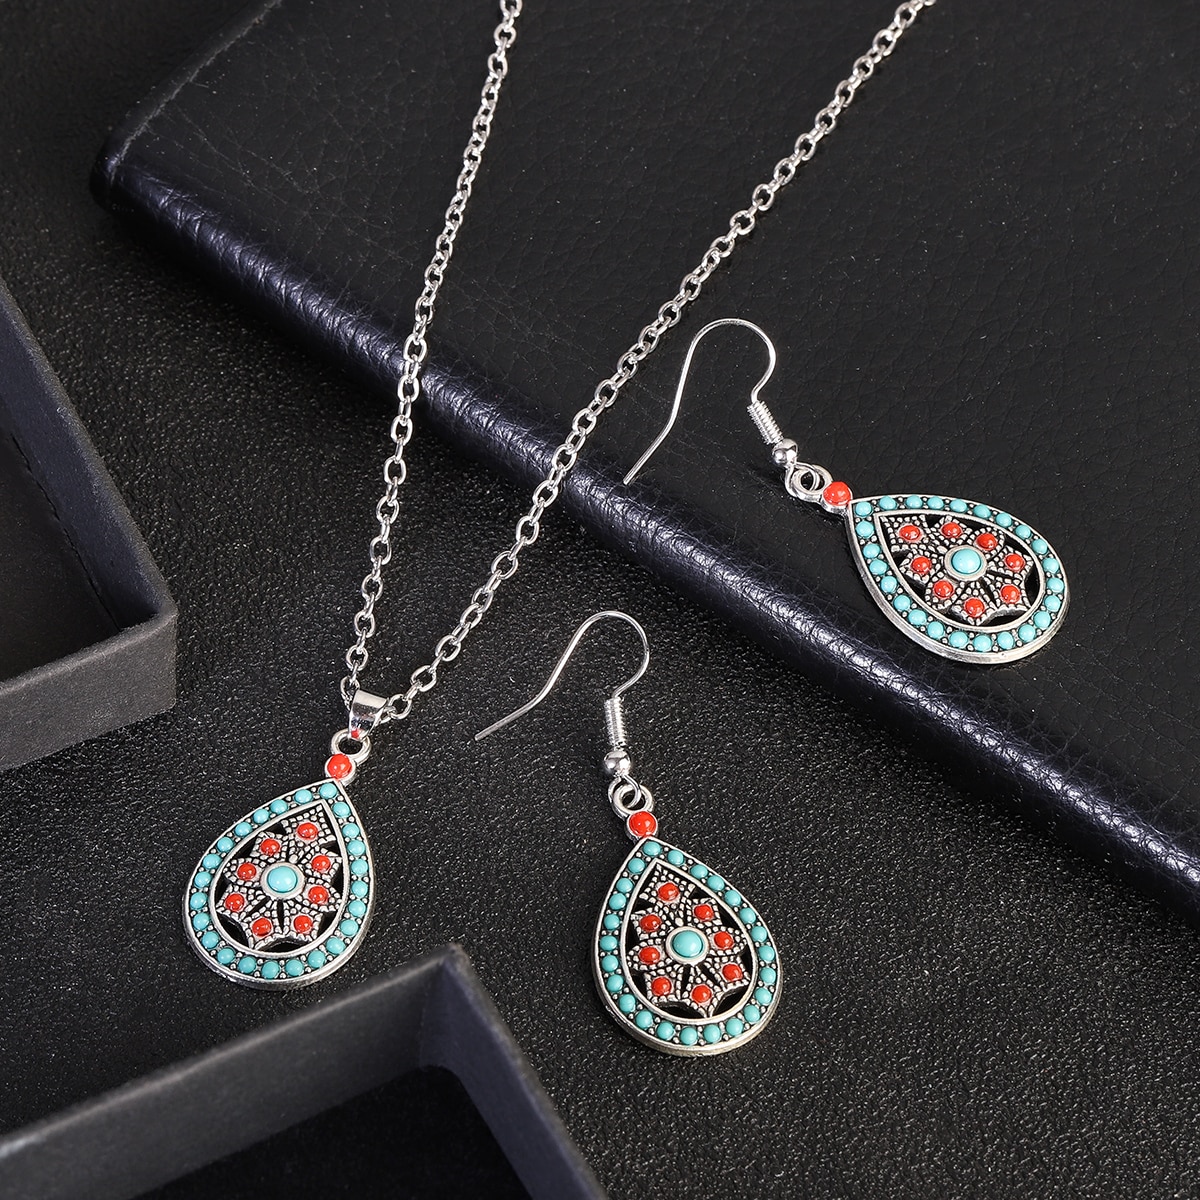 New-Ethnic-Boho-Flower-Earrings-Jewelry-Set-Bijoux-Women39s-Corful-Dripping-Oil-Earrings-Necklace-Se-1005004549738816-6